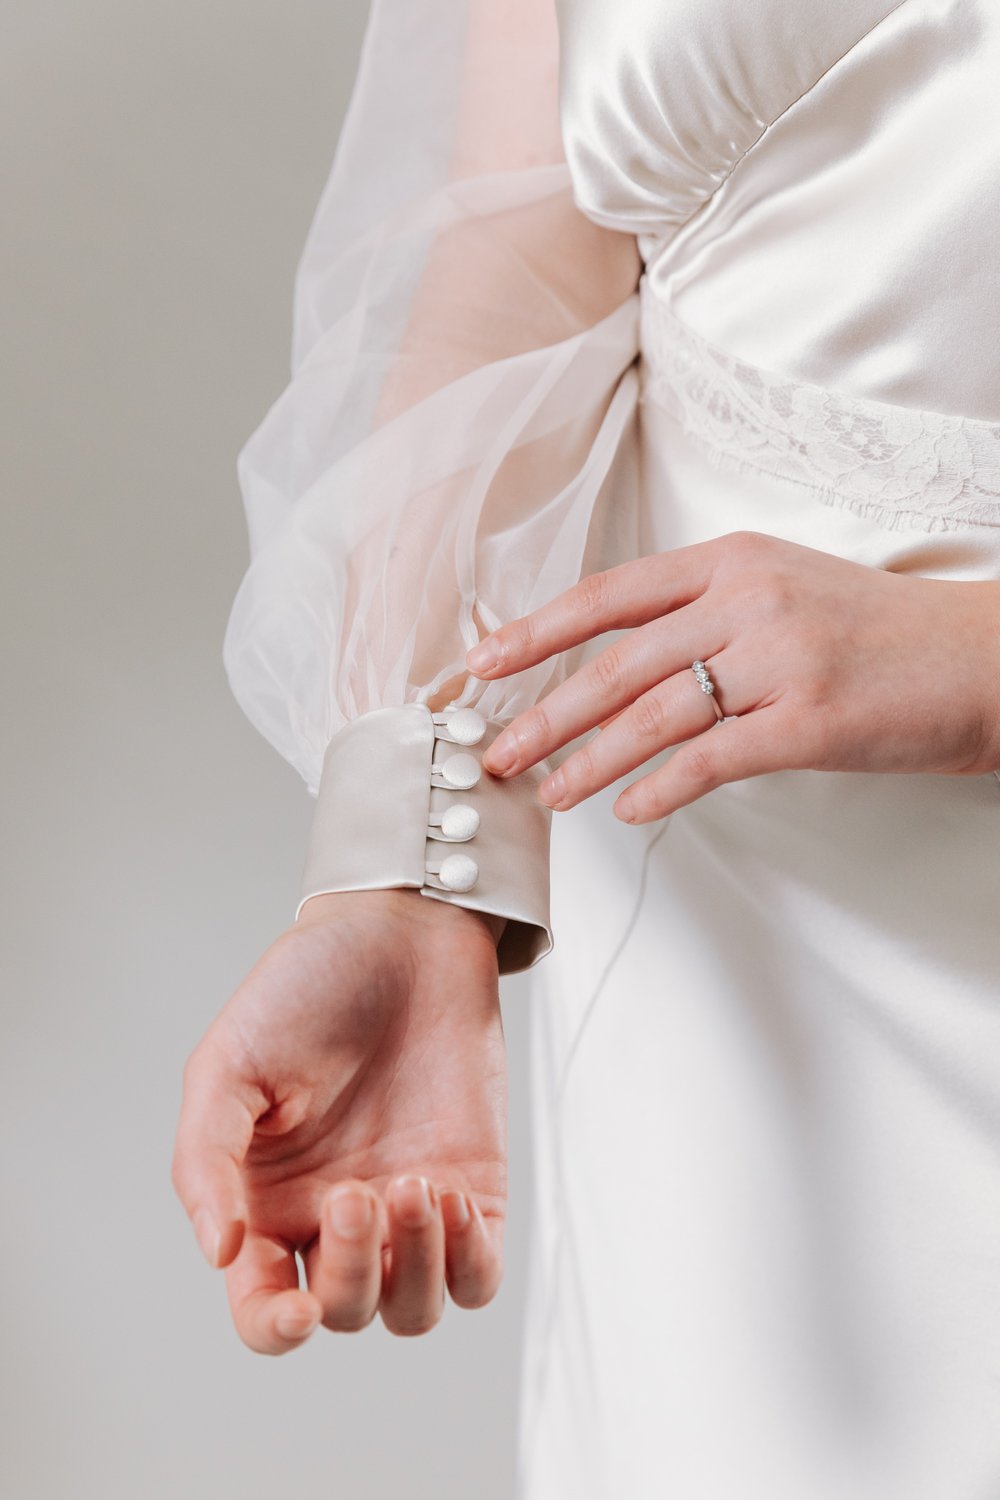 Kate Beaumont Viola sleeved bias cut wedding gown 31.jpg